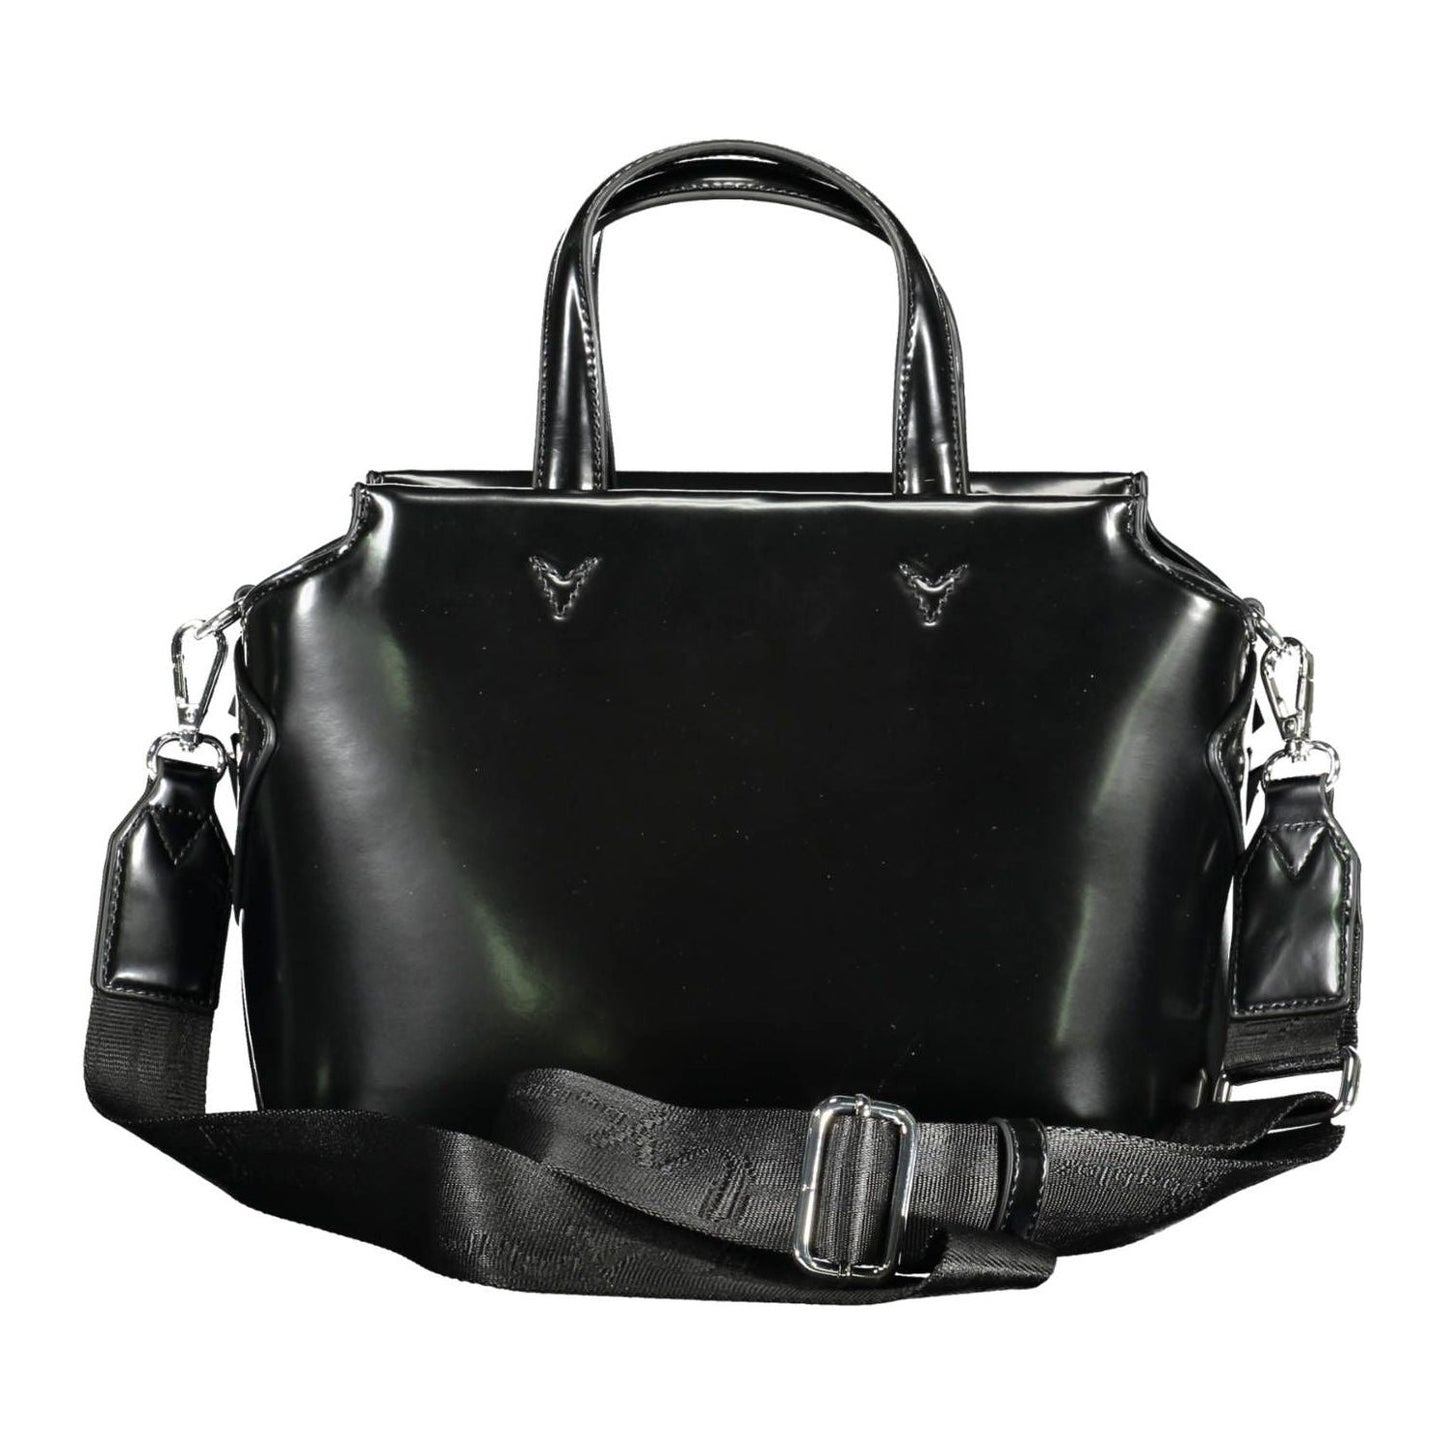 BYBLOS Elegant Black Two-Handle Bag with Contrasting Details elegant-black-two-handle-bag-with-contrasting-details-1